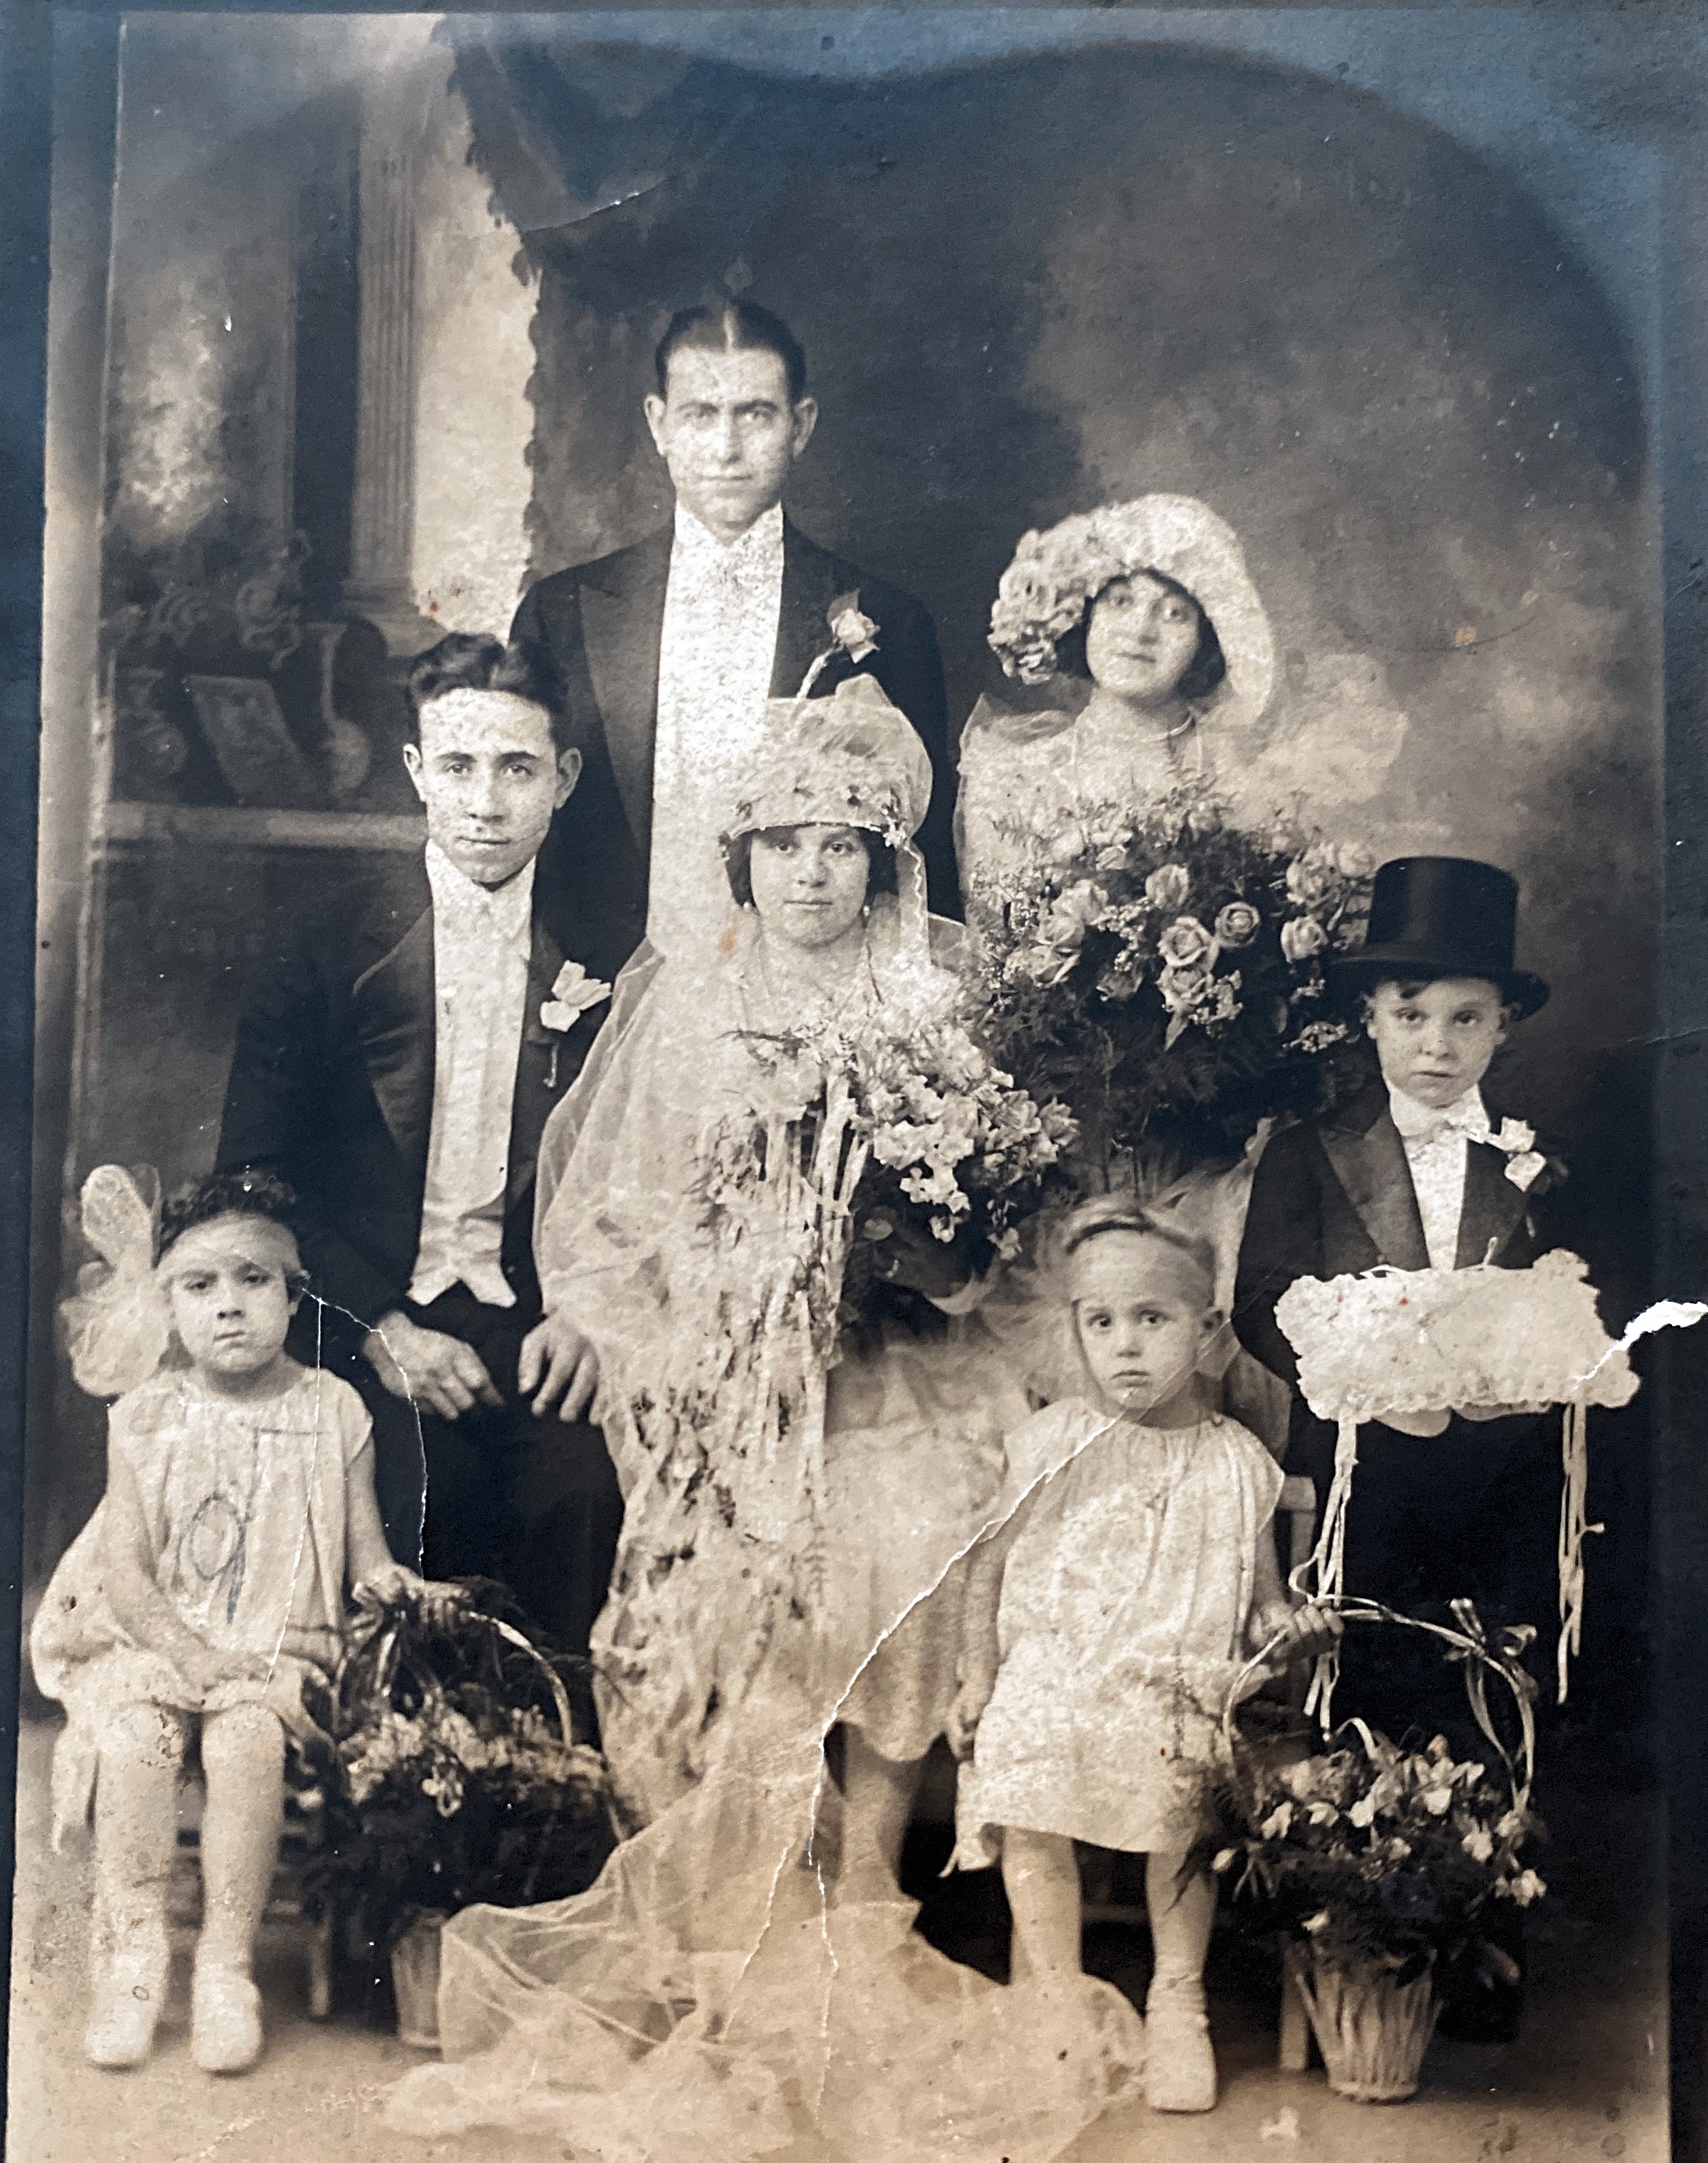 Nana and Papa Angiuoni wedding party 12/16/1928